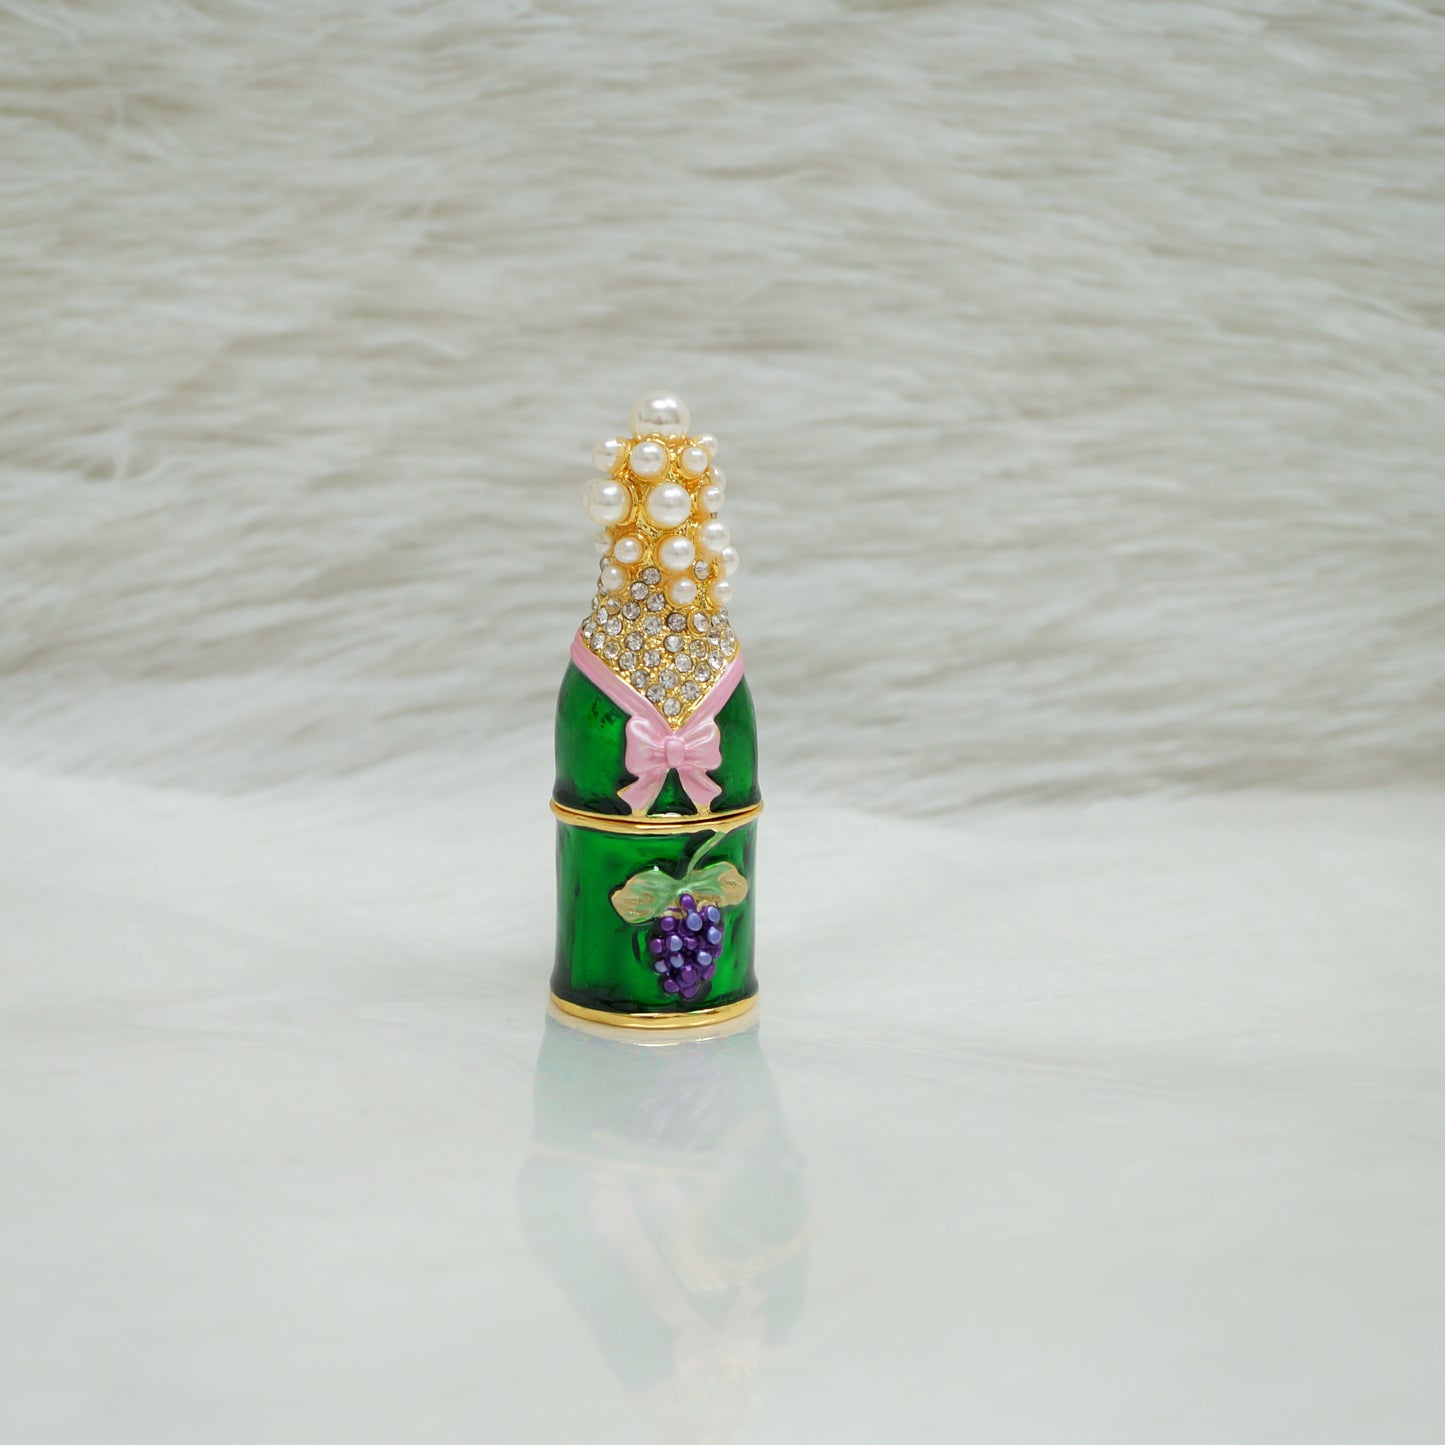 Cristiani Collezione Small Champagne Bottle Trinket Box.